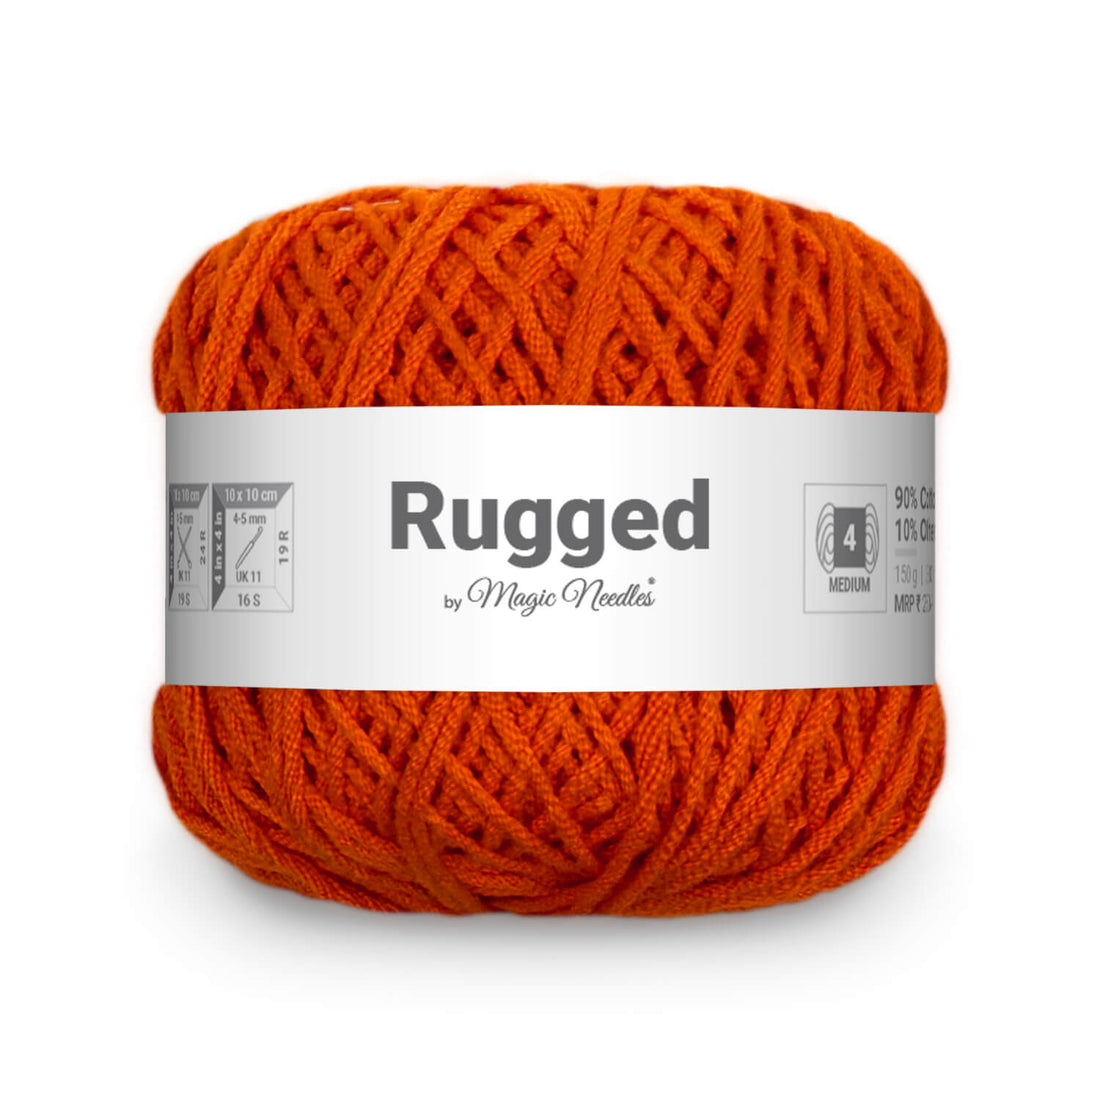 Rugged Yarn - Orange 62D